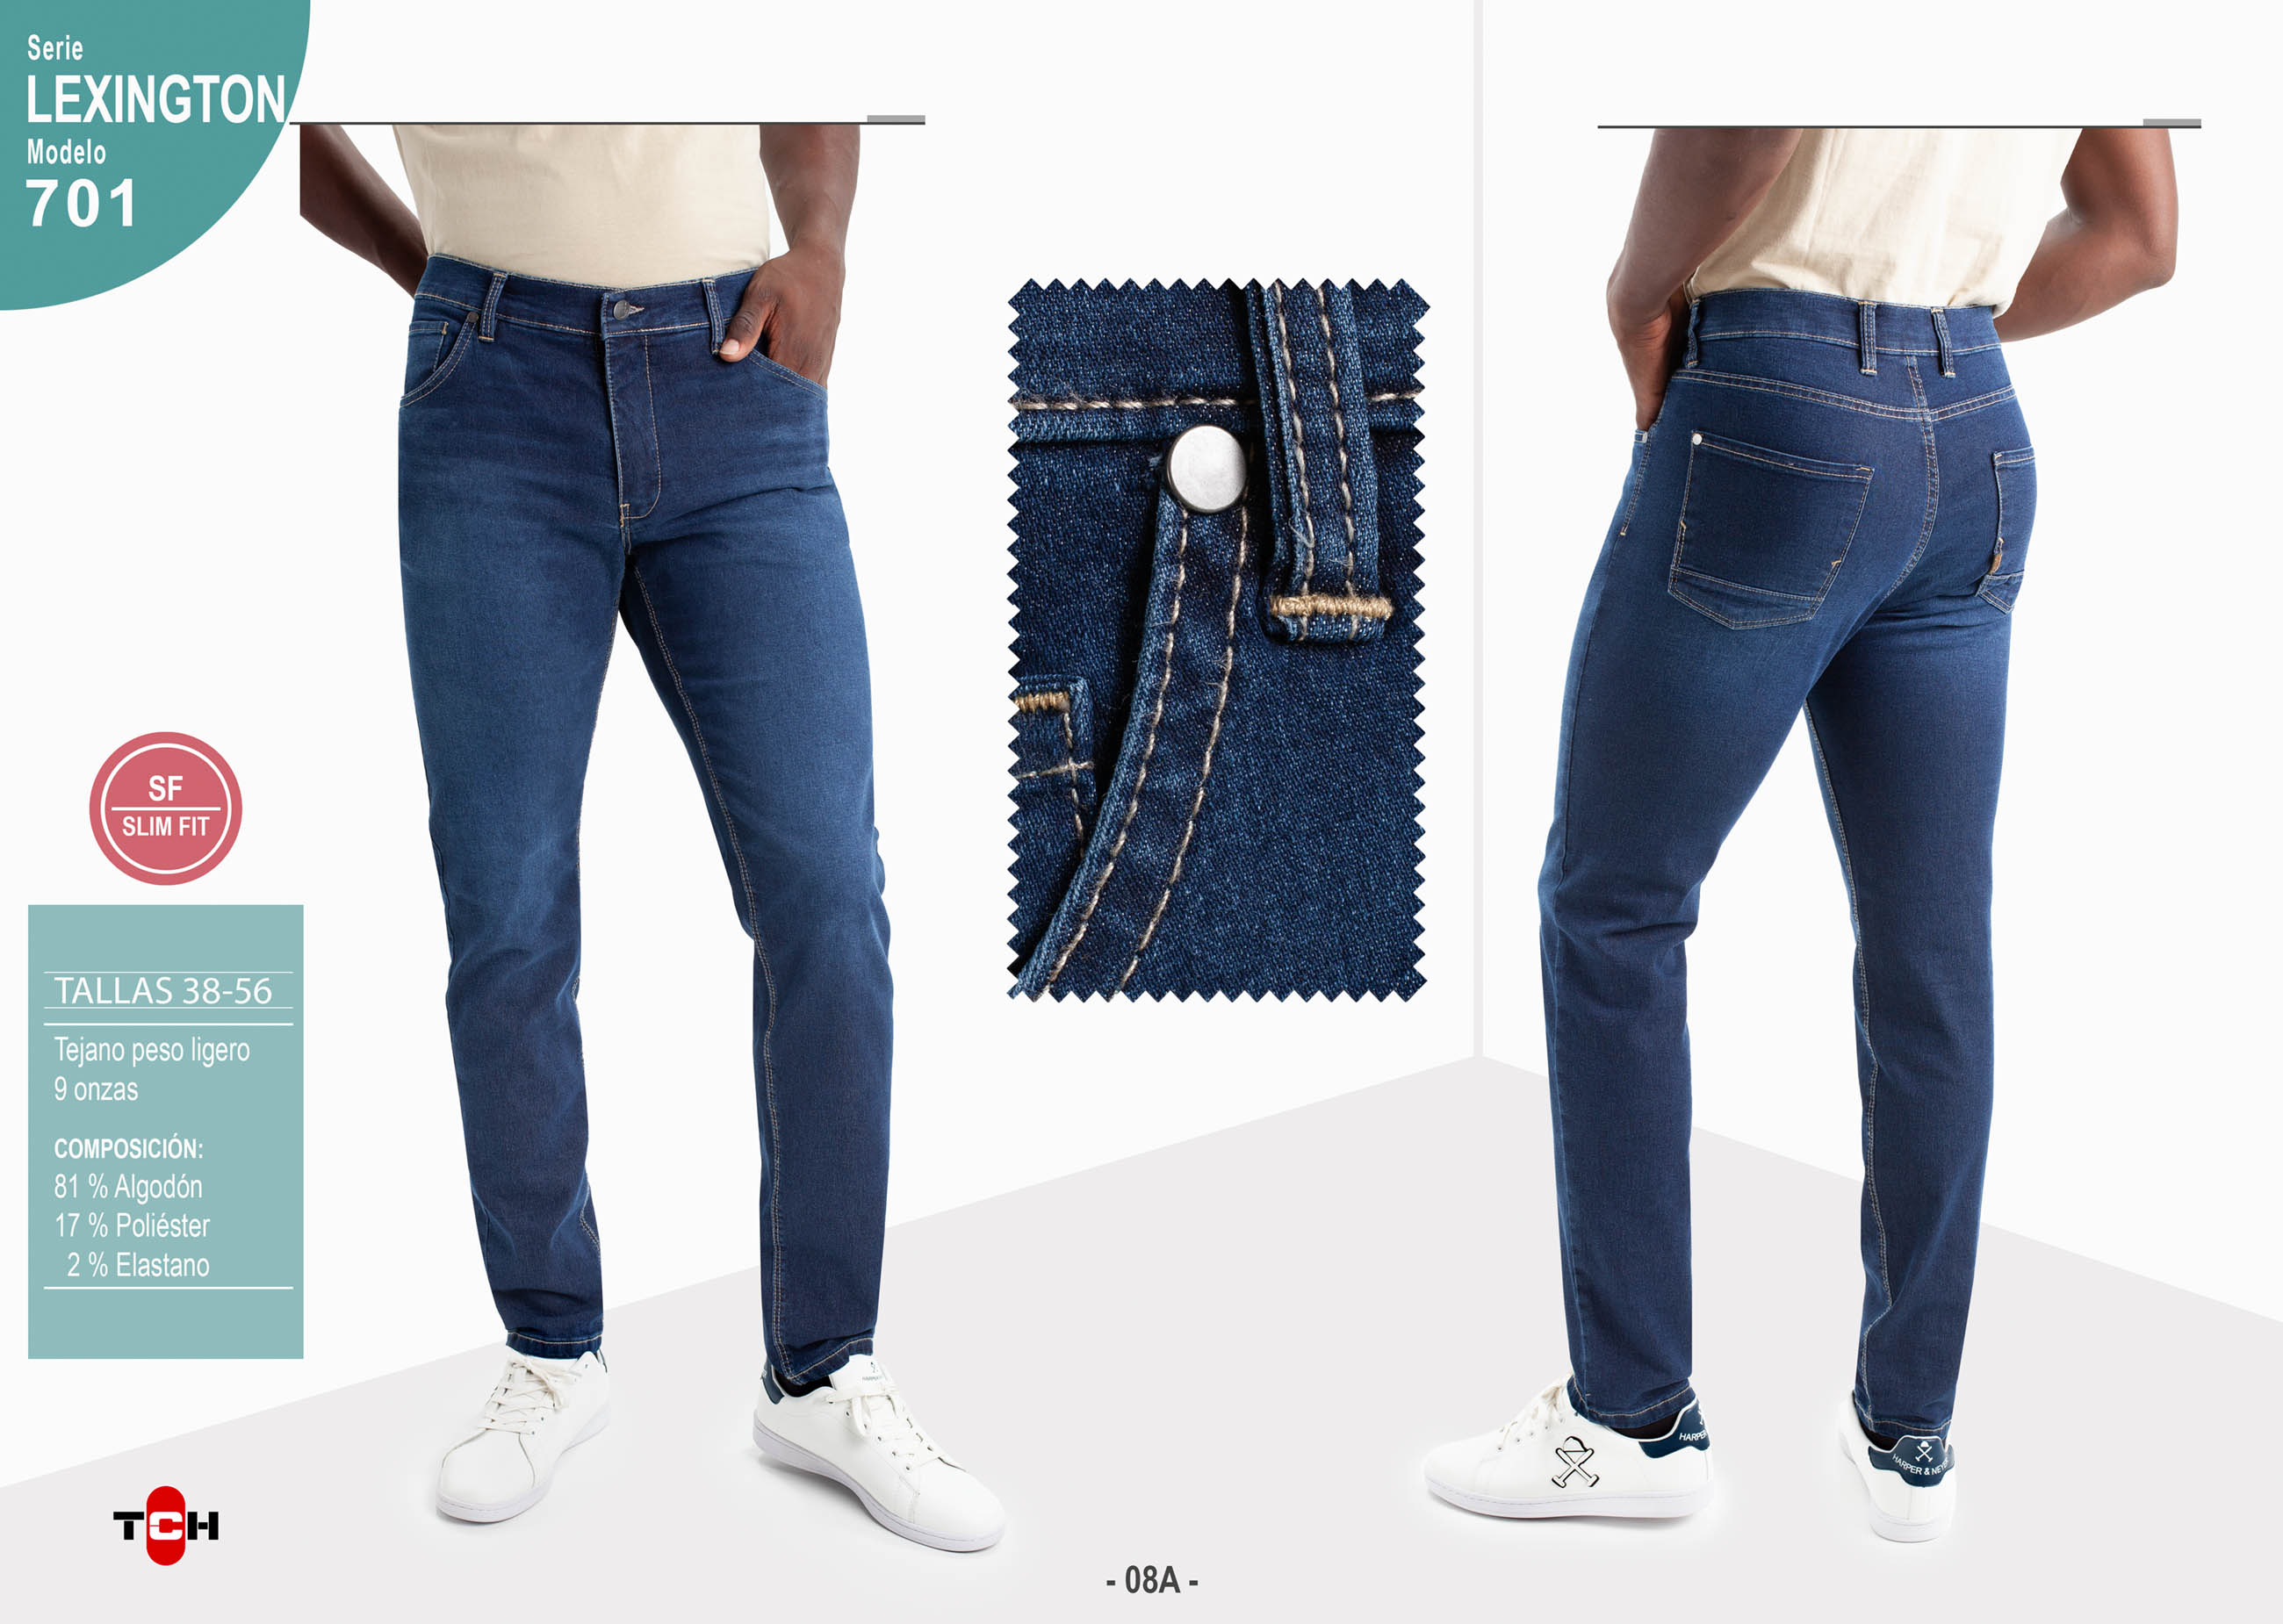 Jeans de hombre, pantalón vaquero en tejido denim azul lavado con desgastes de algodón con lycra e hilo a contraste en línea Slim Fit.